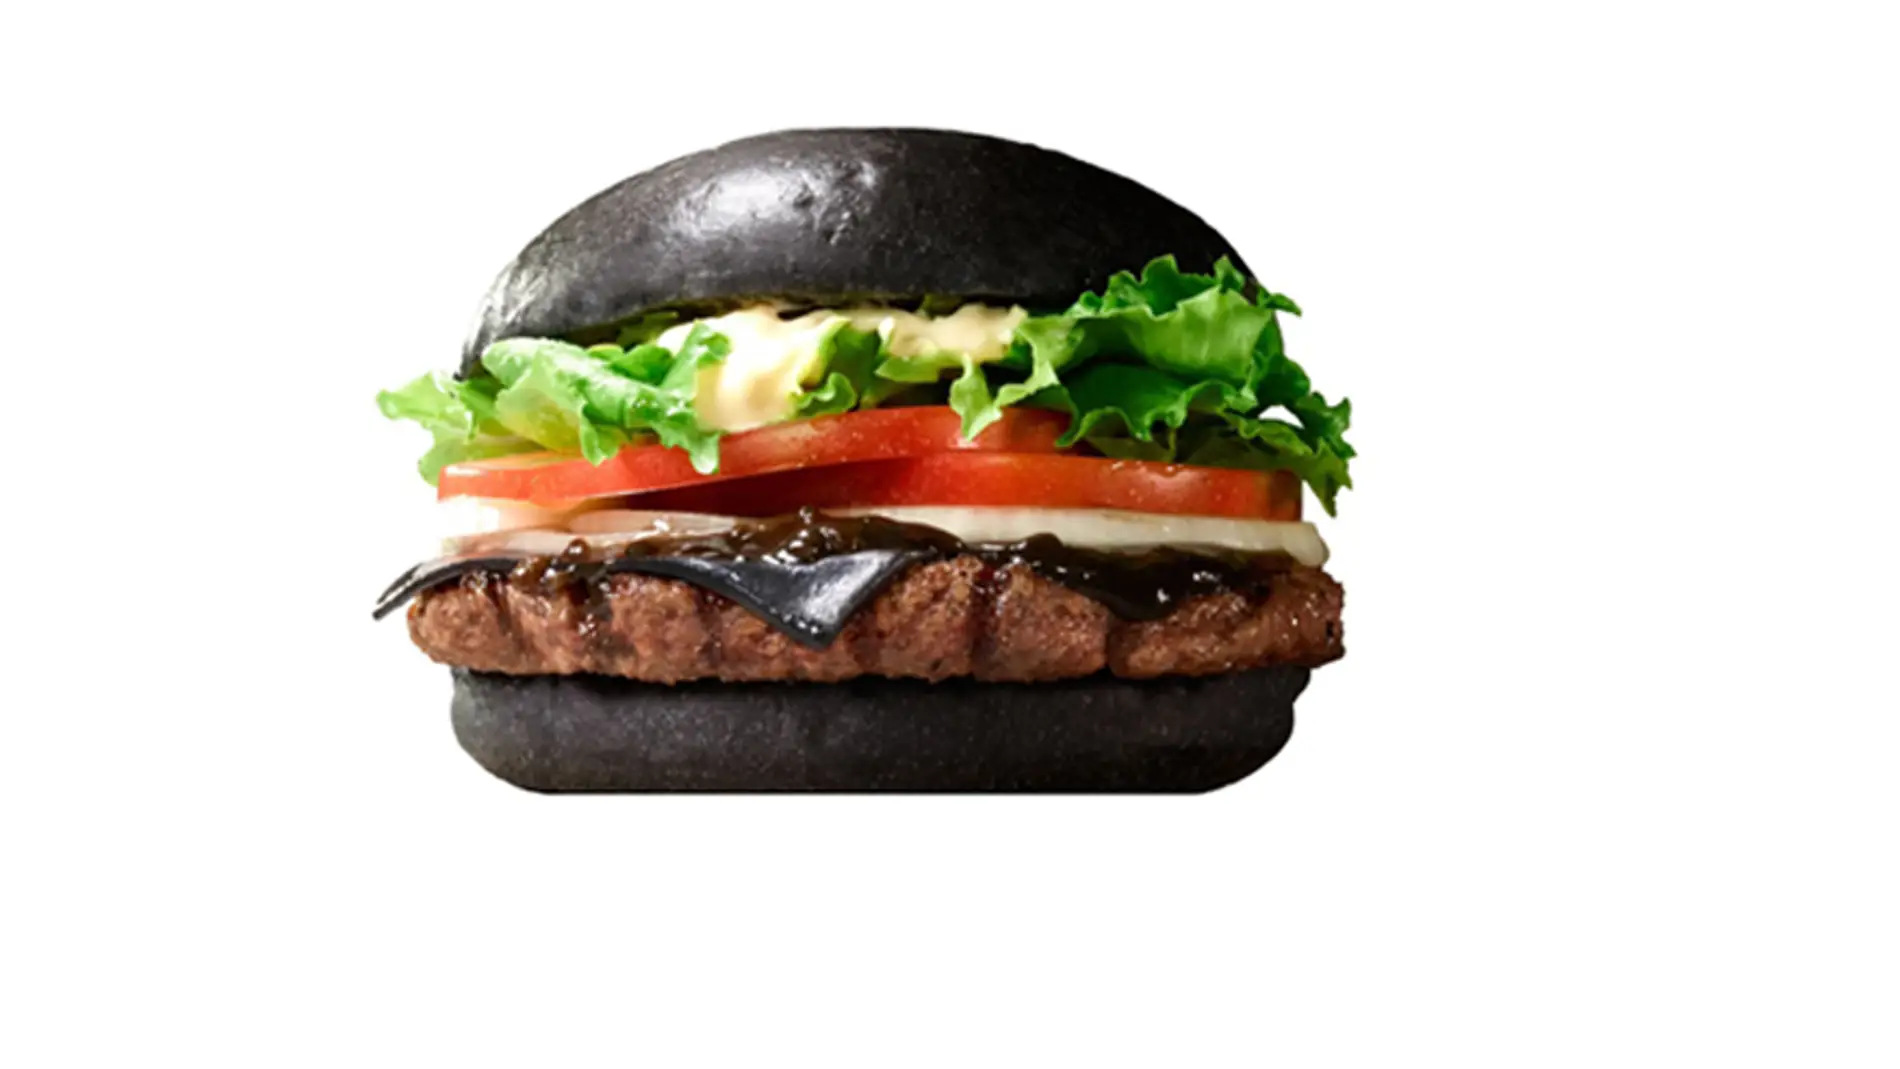 La hamburguesa negra de Burger King. Con su pinta loca.